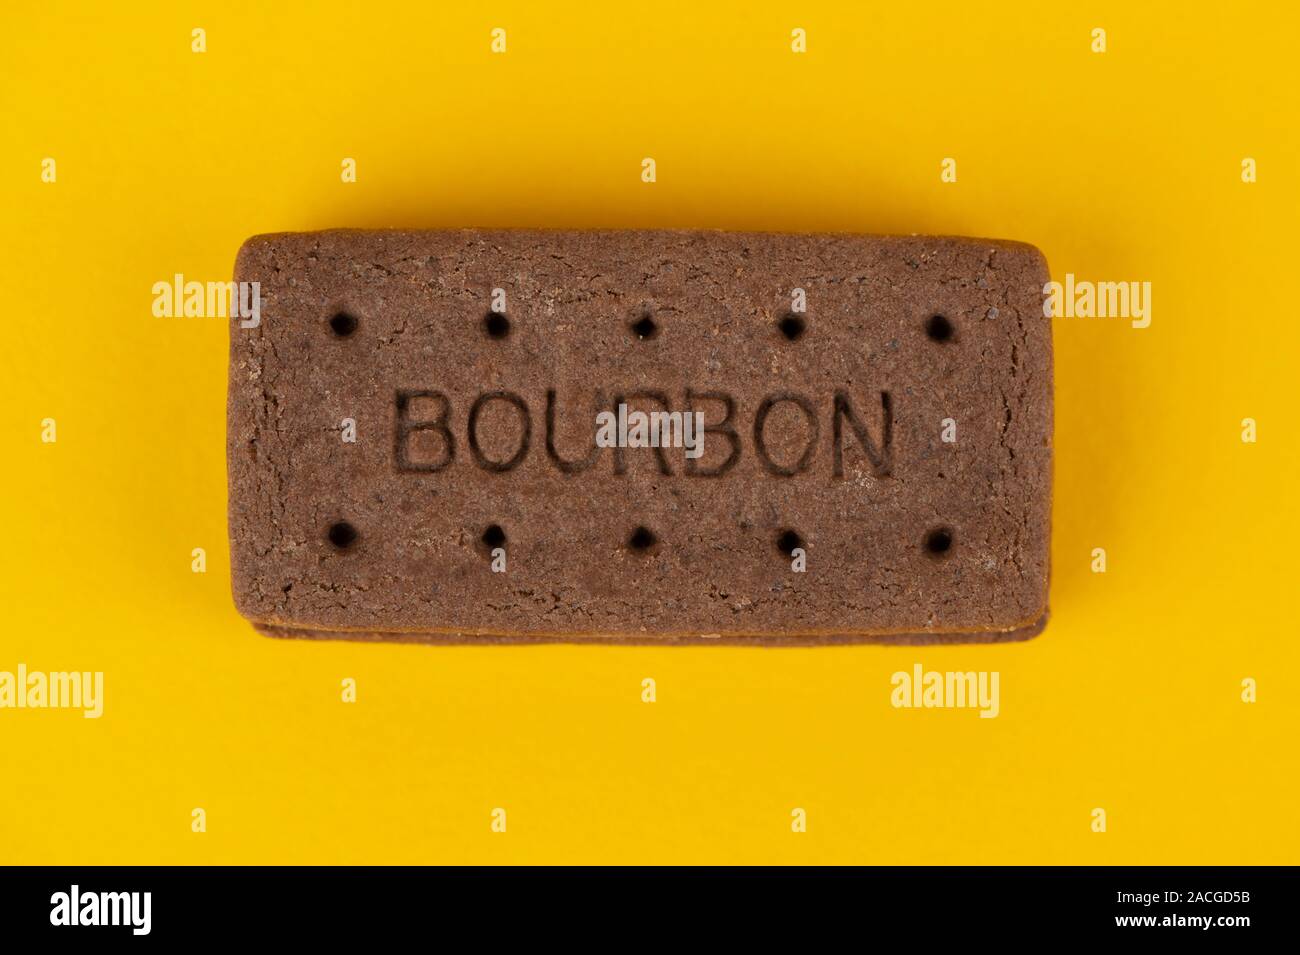 Eine Schokolade, Bourbon keks Schuß auf einen gelben Hintergrund. Stockfoto